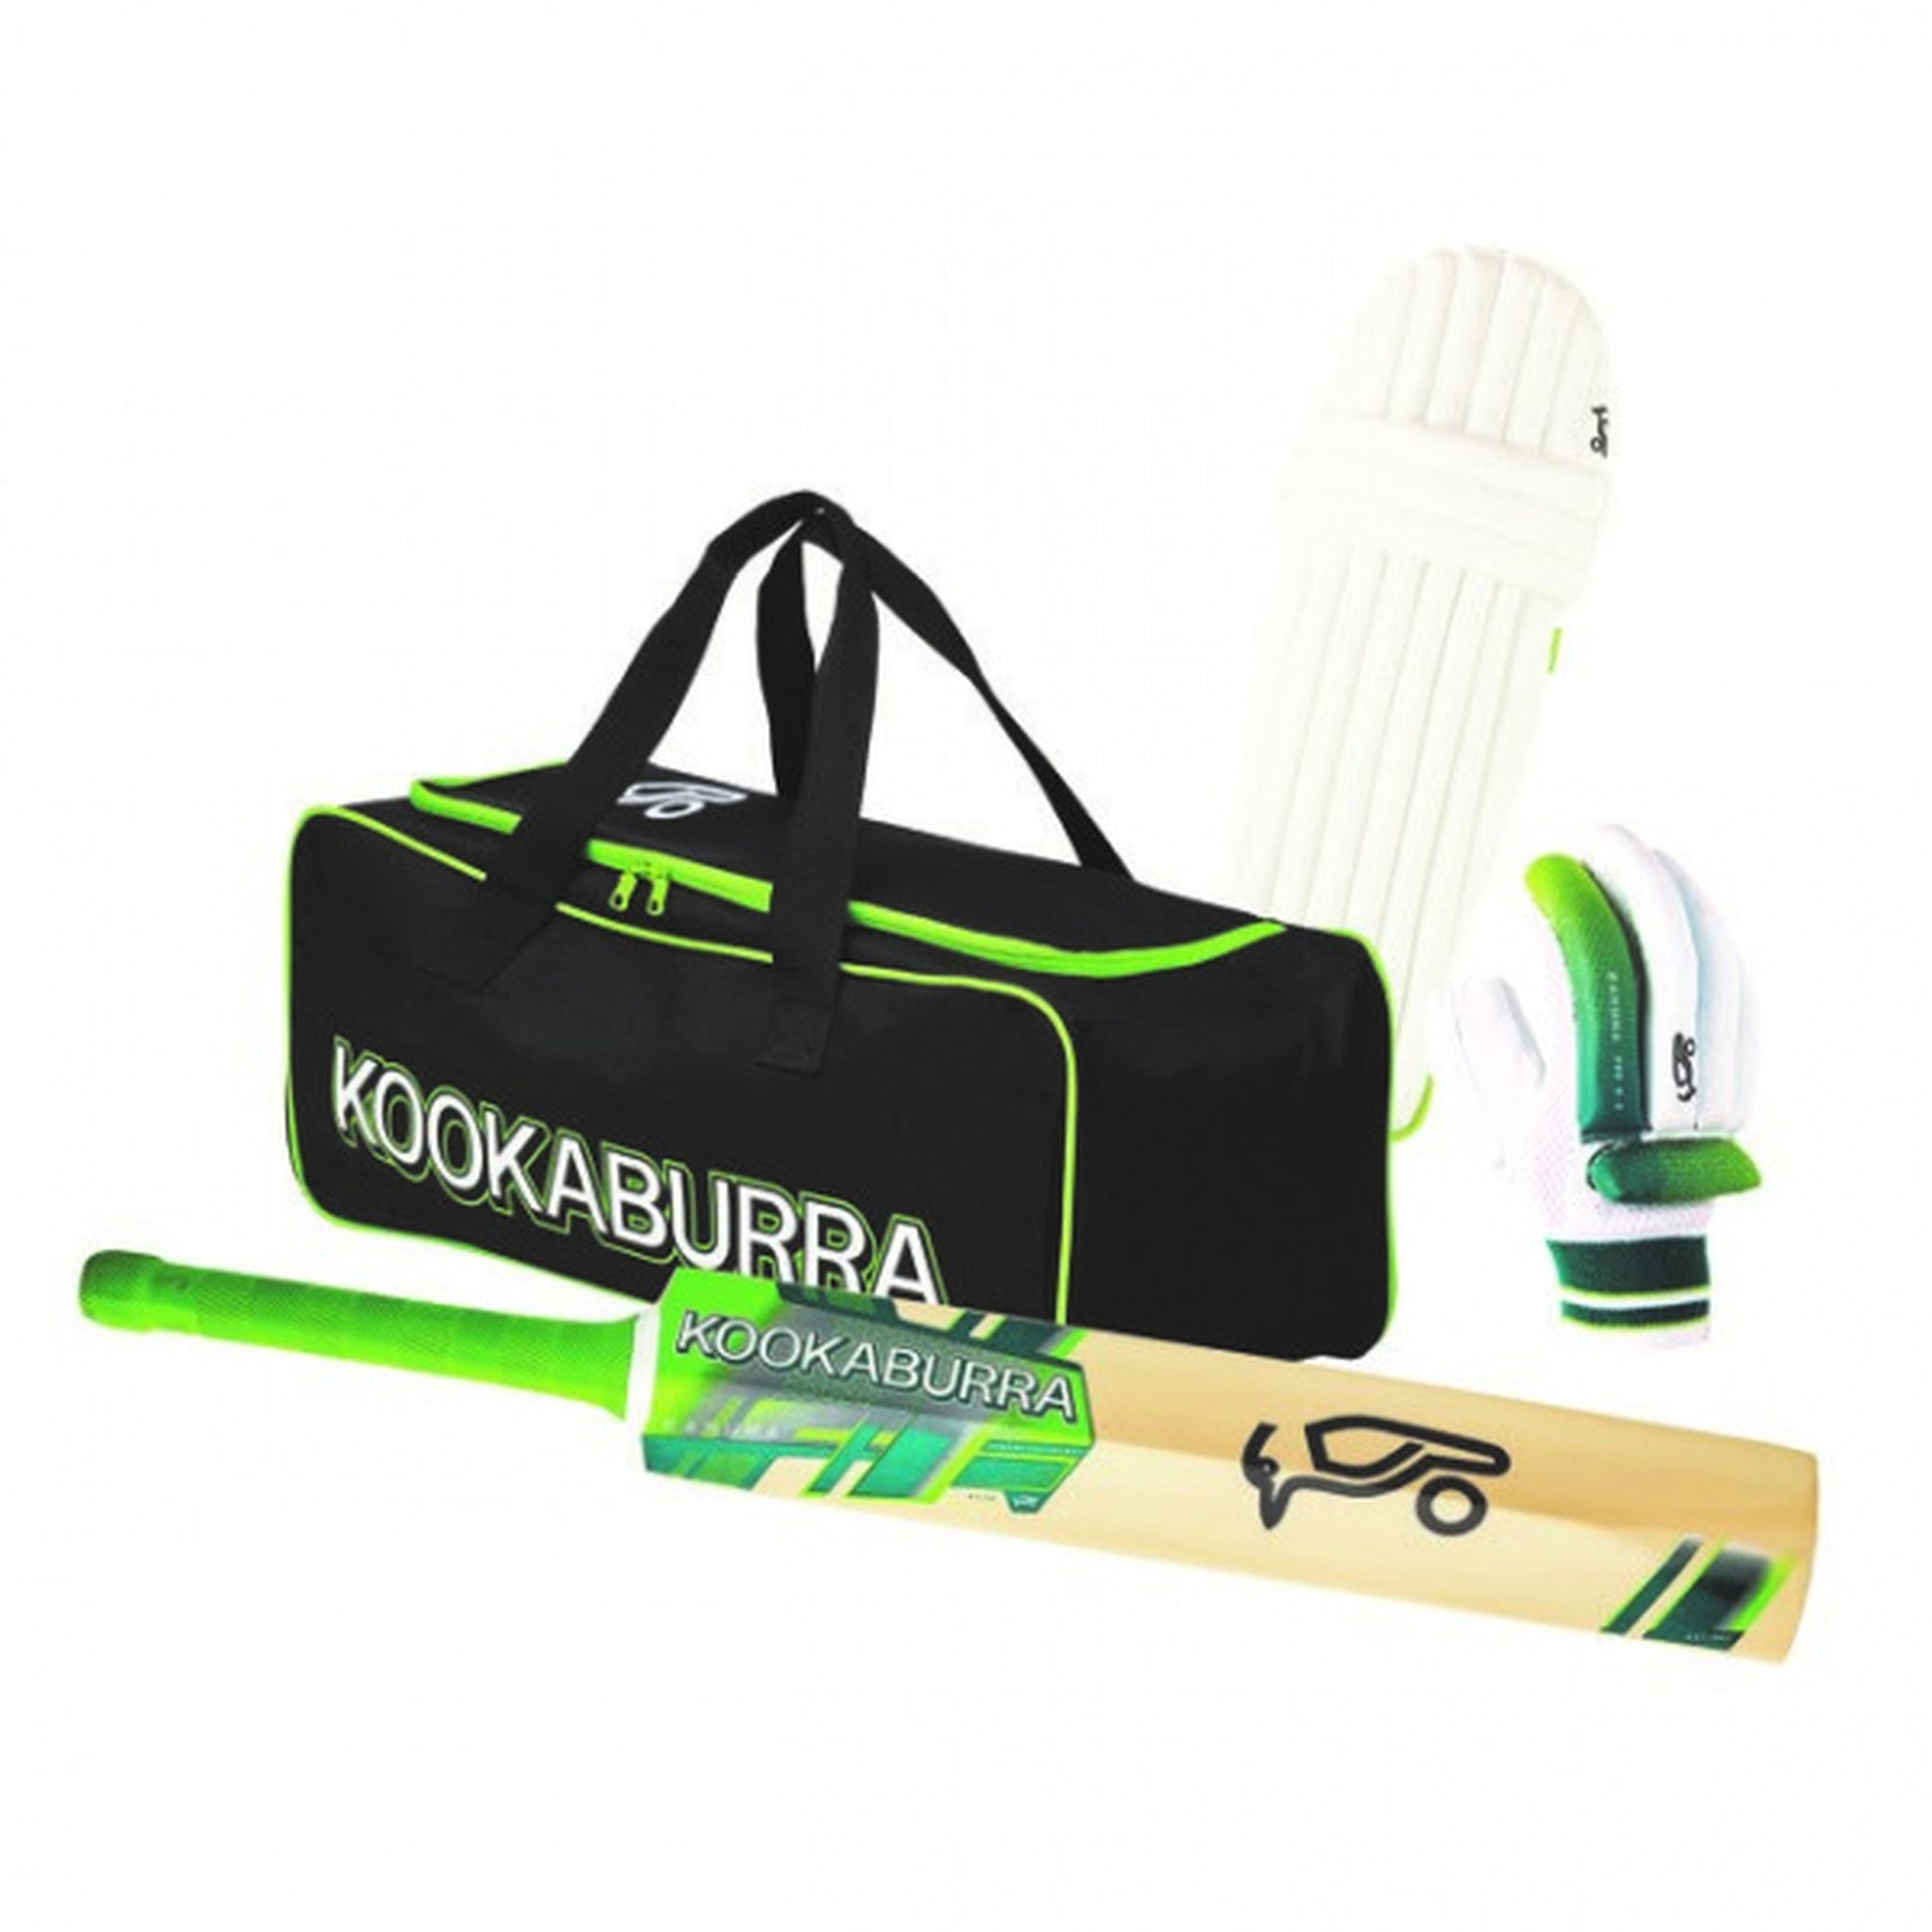 Kookaburra Kahnuna Junior Cricket Kit